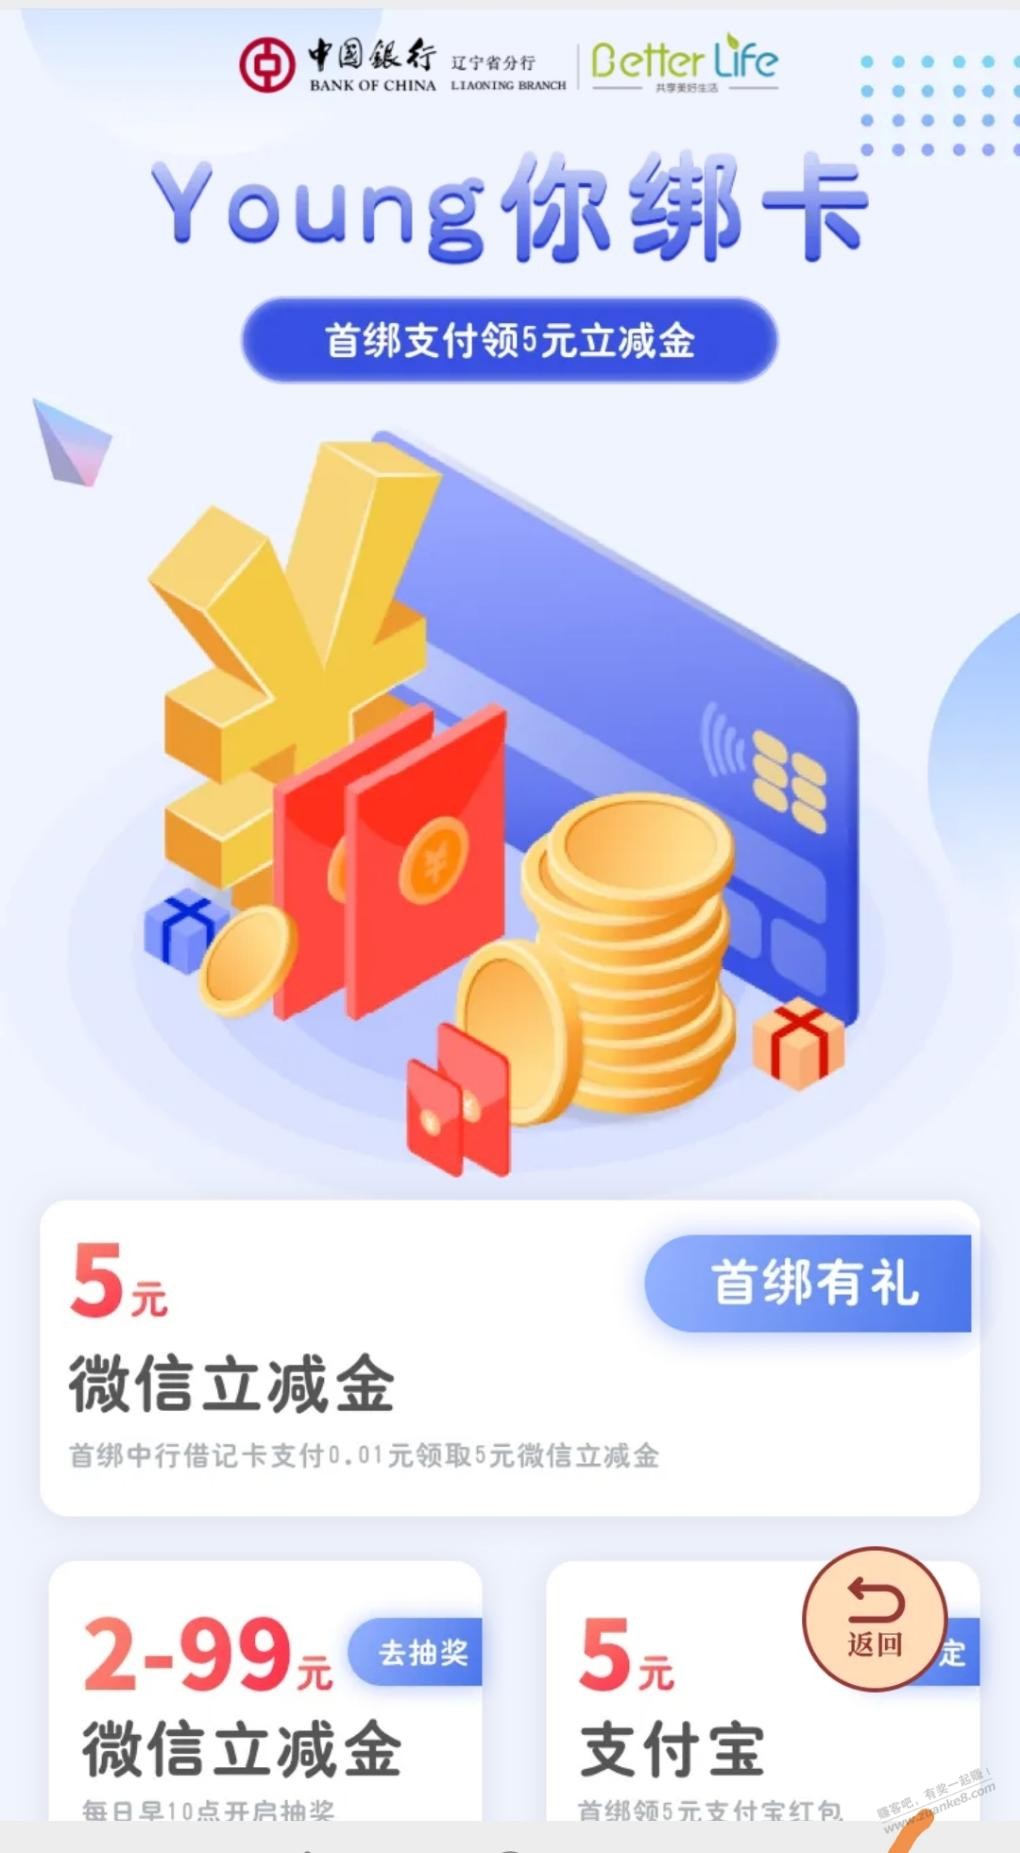 中国银行绑卡就能给5元V.x立减金-还能抽2-99元V.x立减金